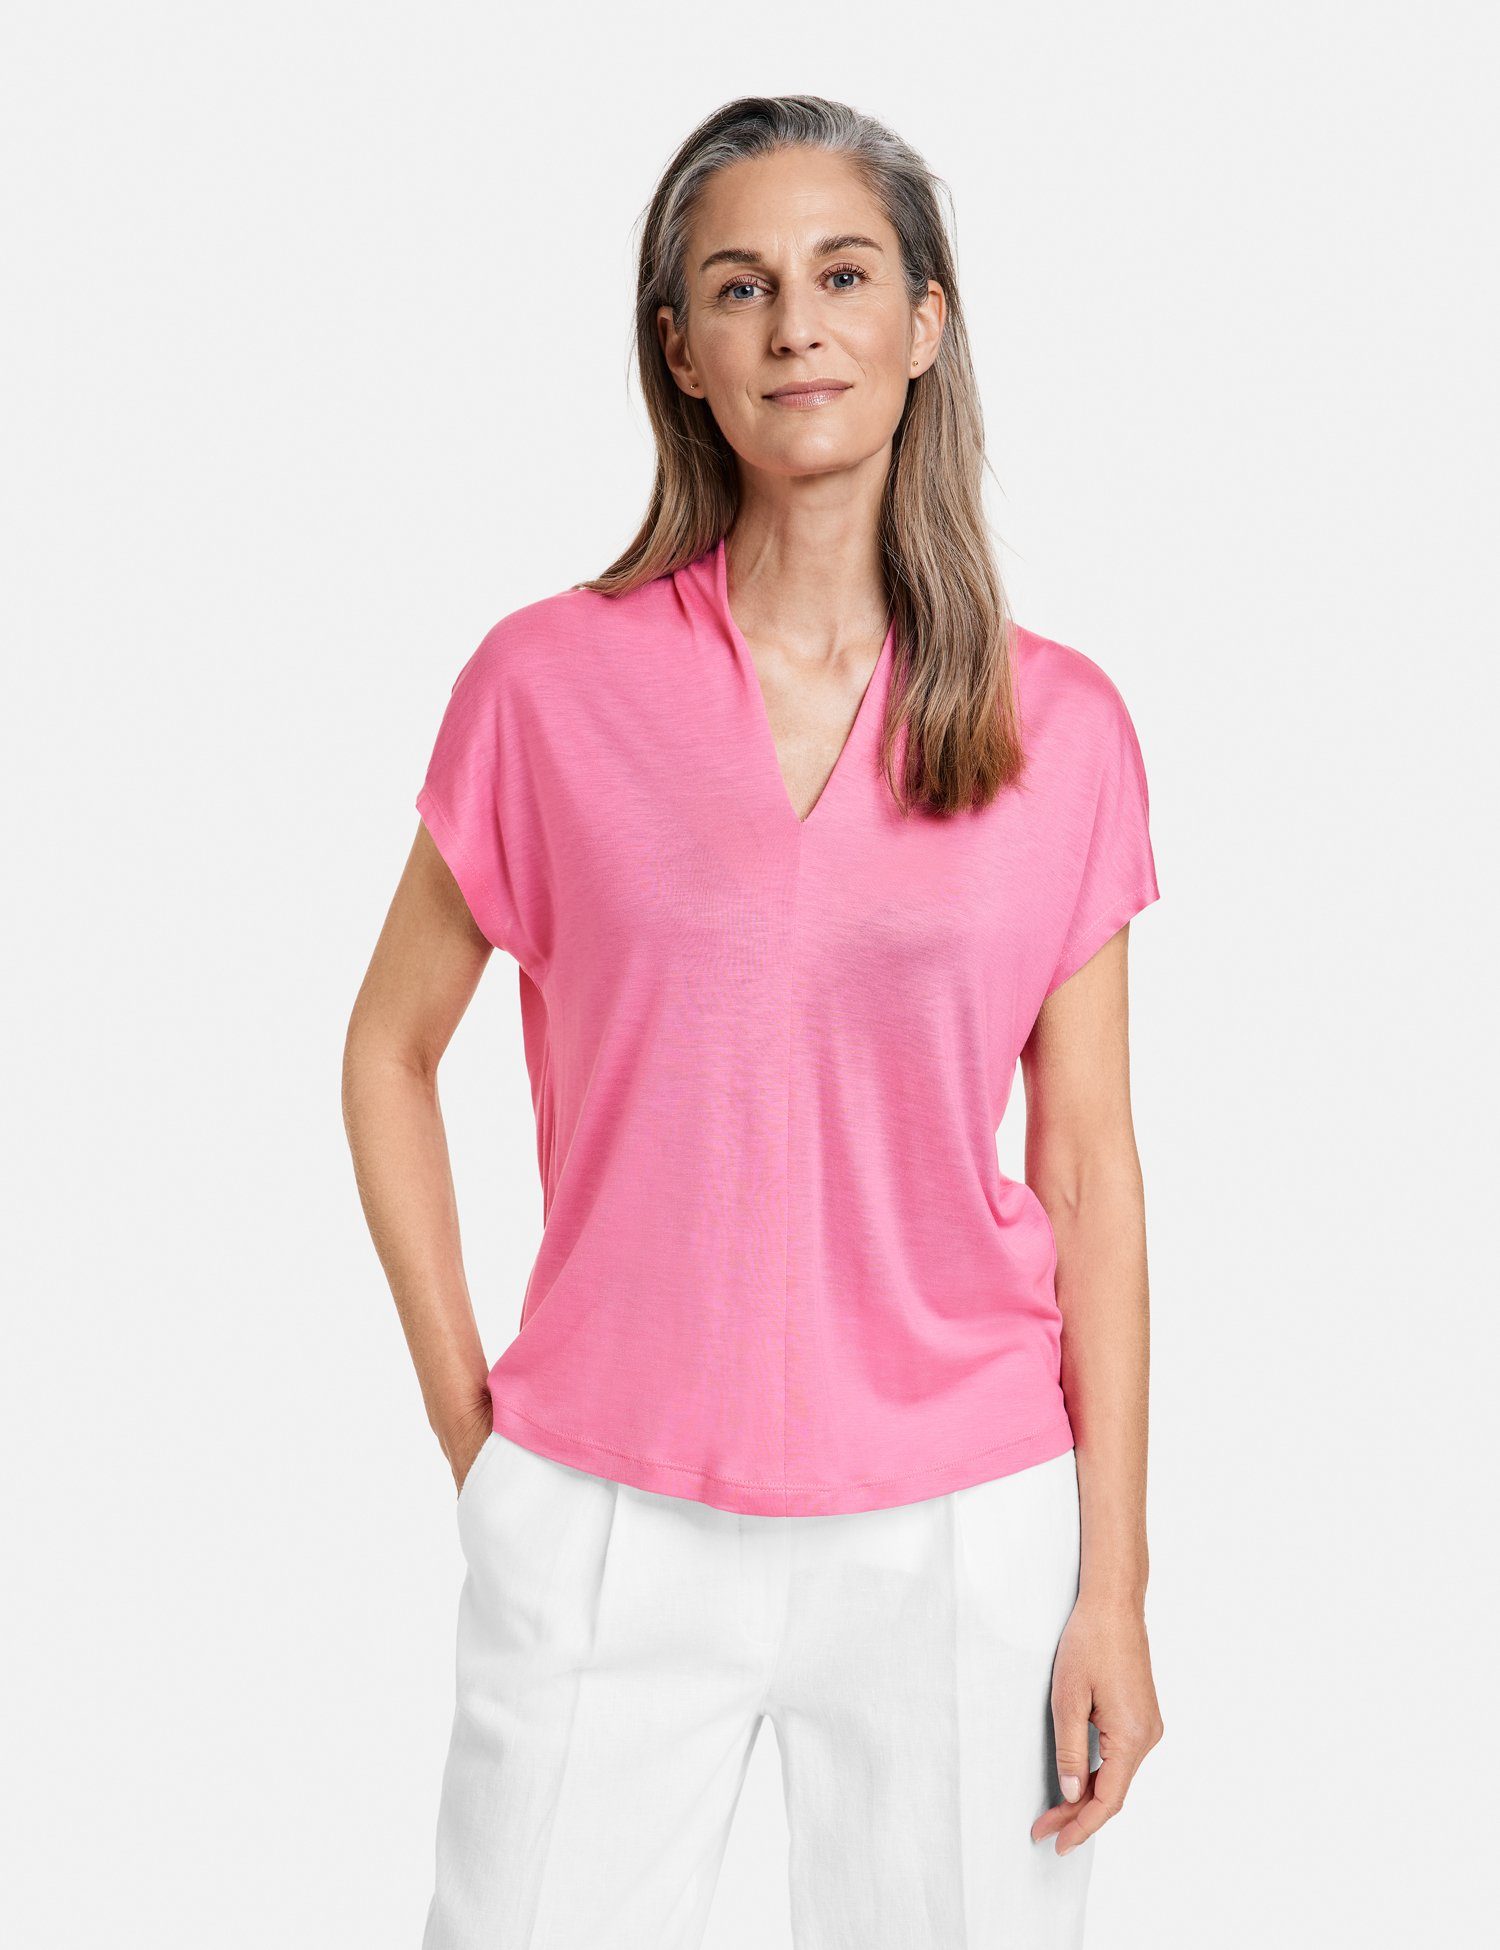 GERRY Schultern überschnittenen Pink mit Kurzarmshirt Kurzarmshirt Soft WEBER